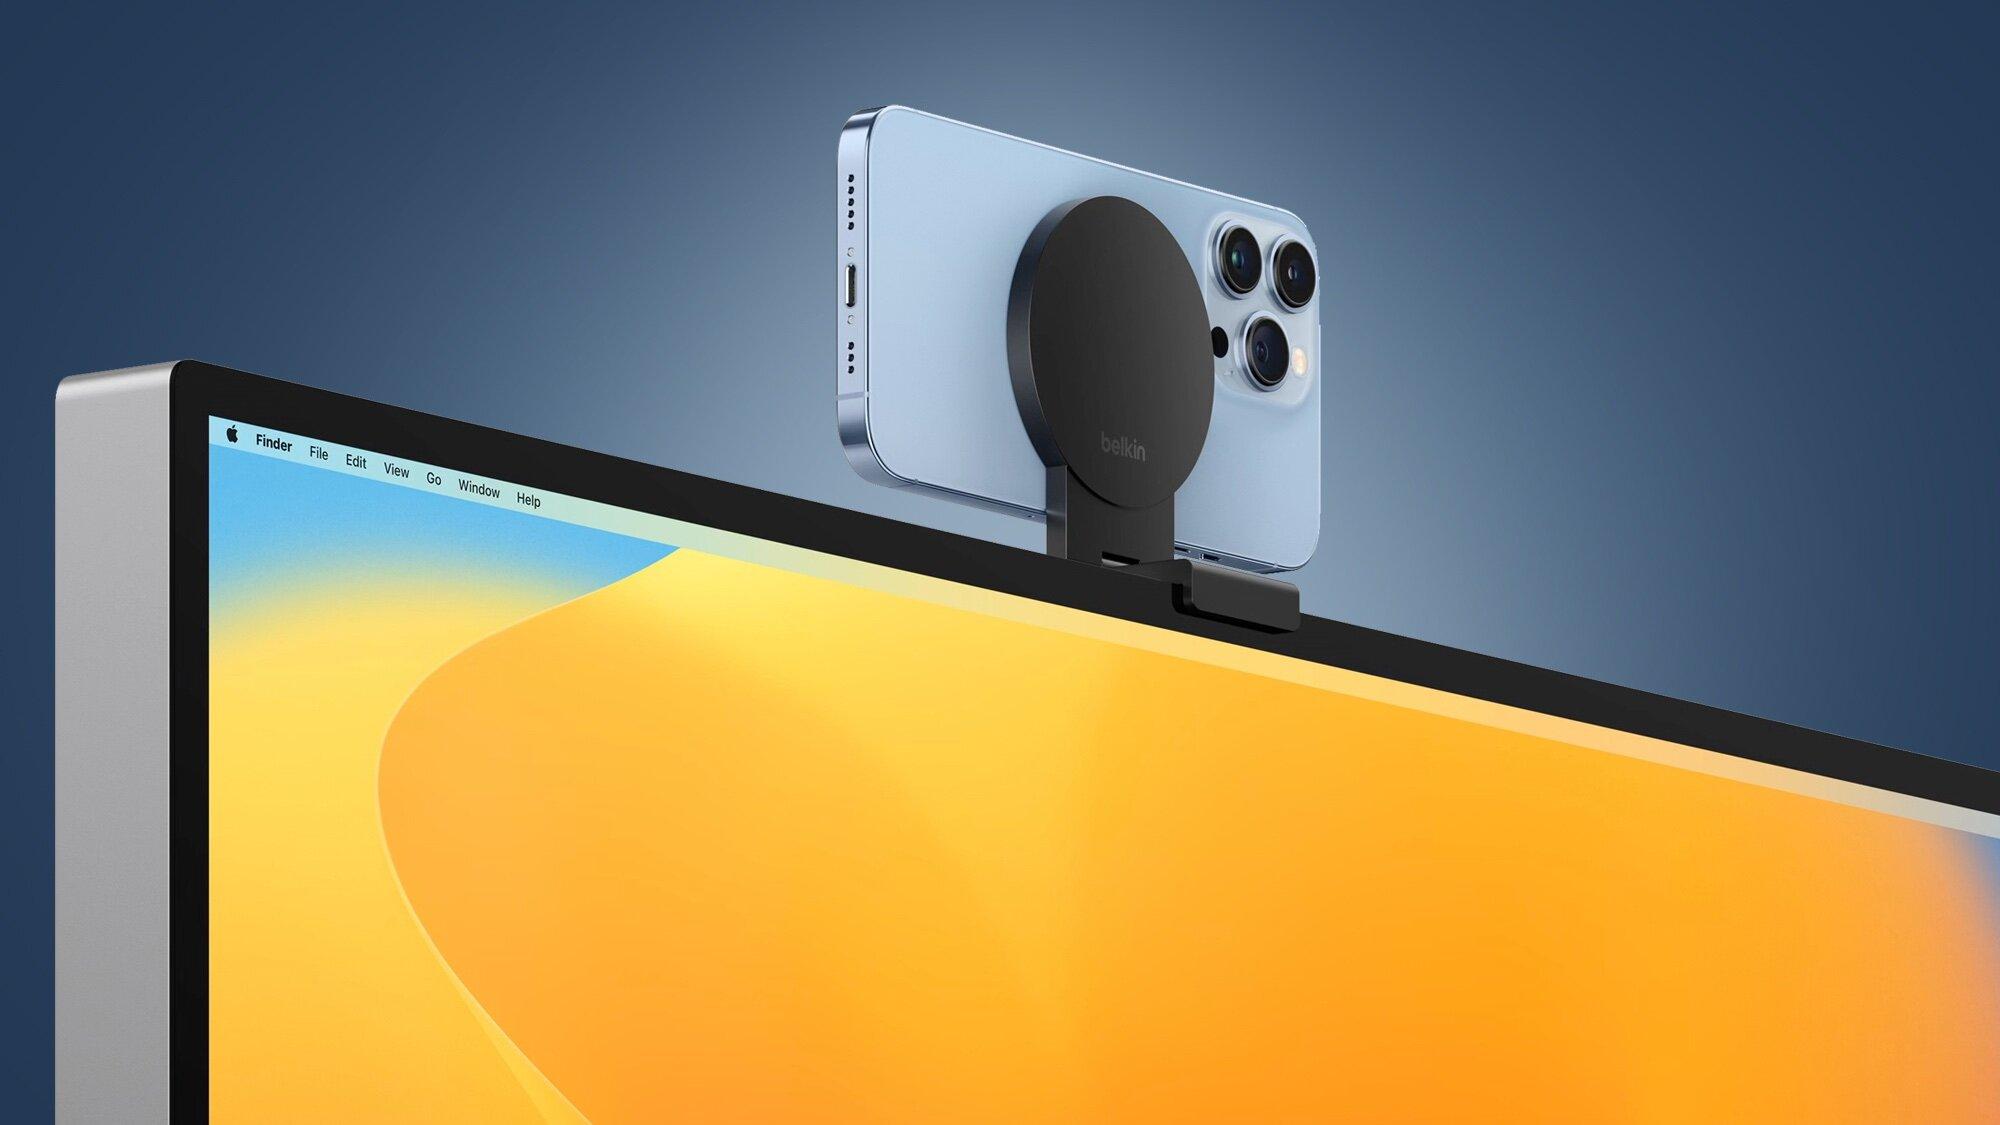 Continuity Camera, cho phép biến iPhone thành Webcam (Ảnh: Internet)